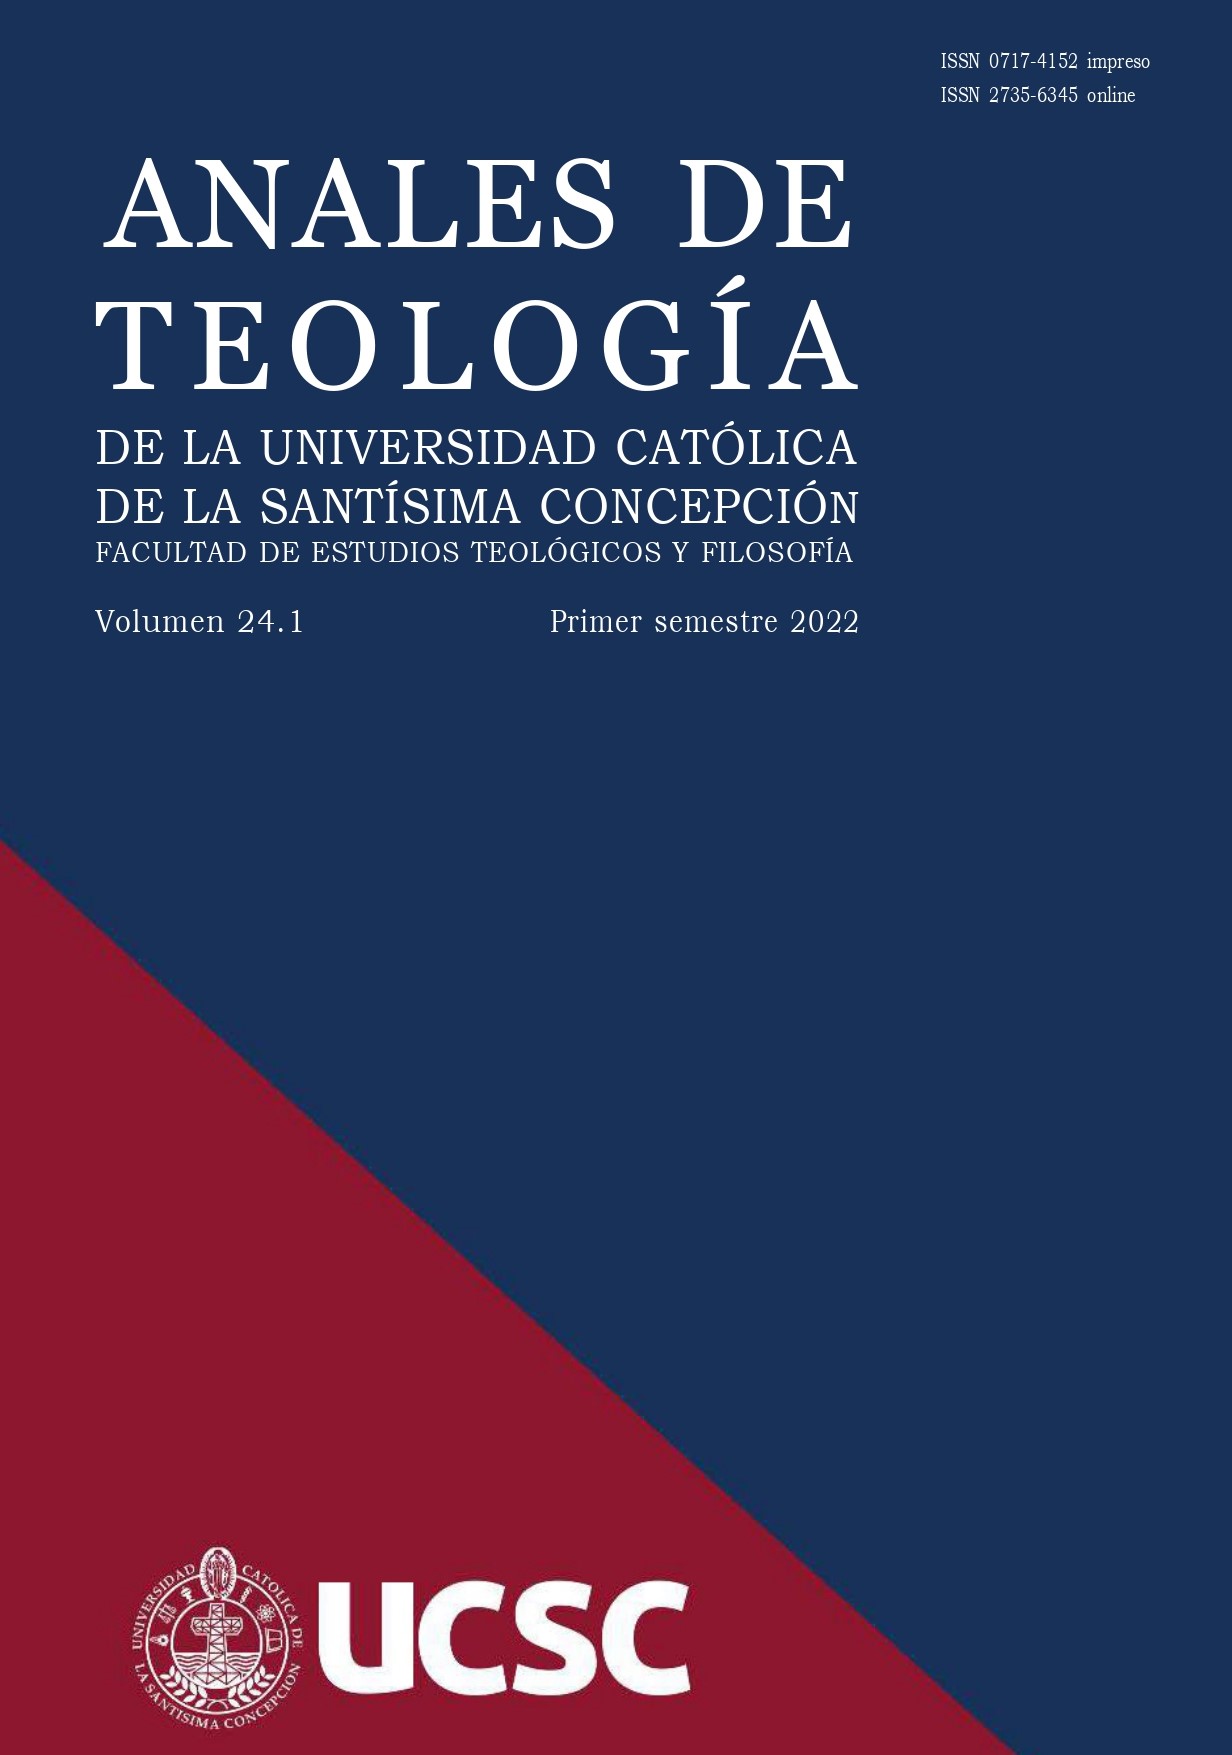 					View Vol. 20 No. 1 (2018): Anales de Teología | Enero - Junio 2018
				